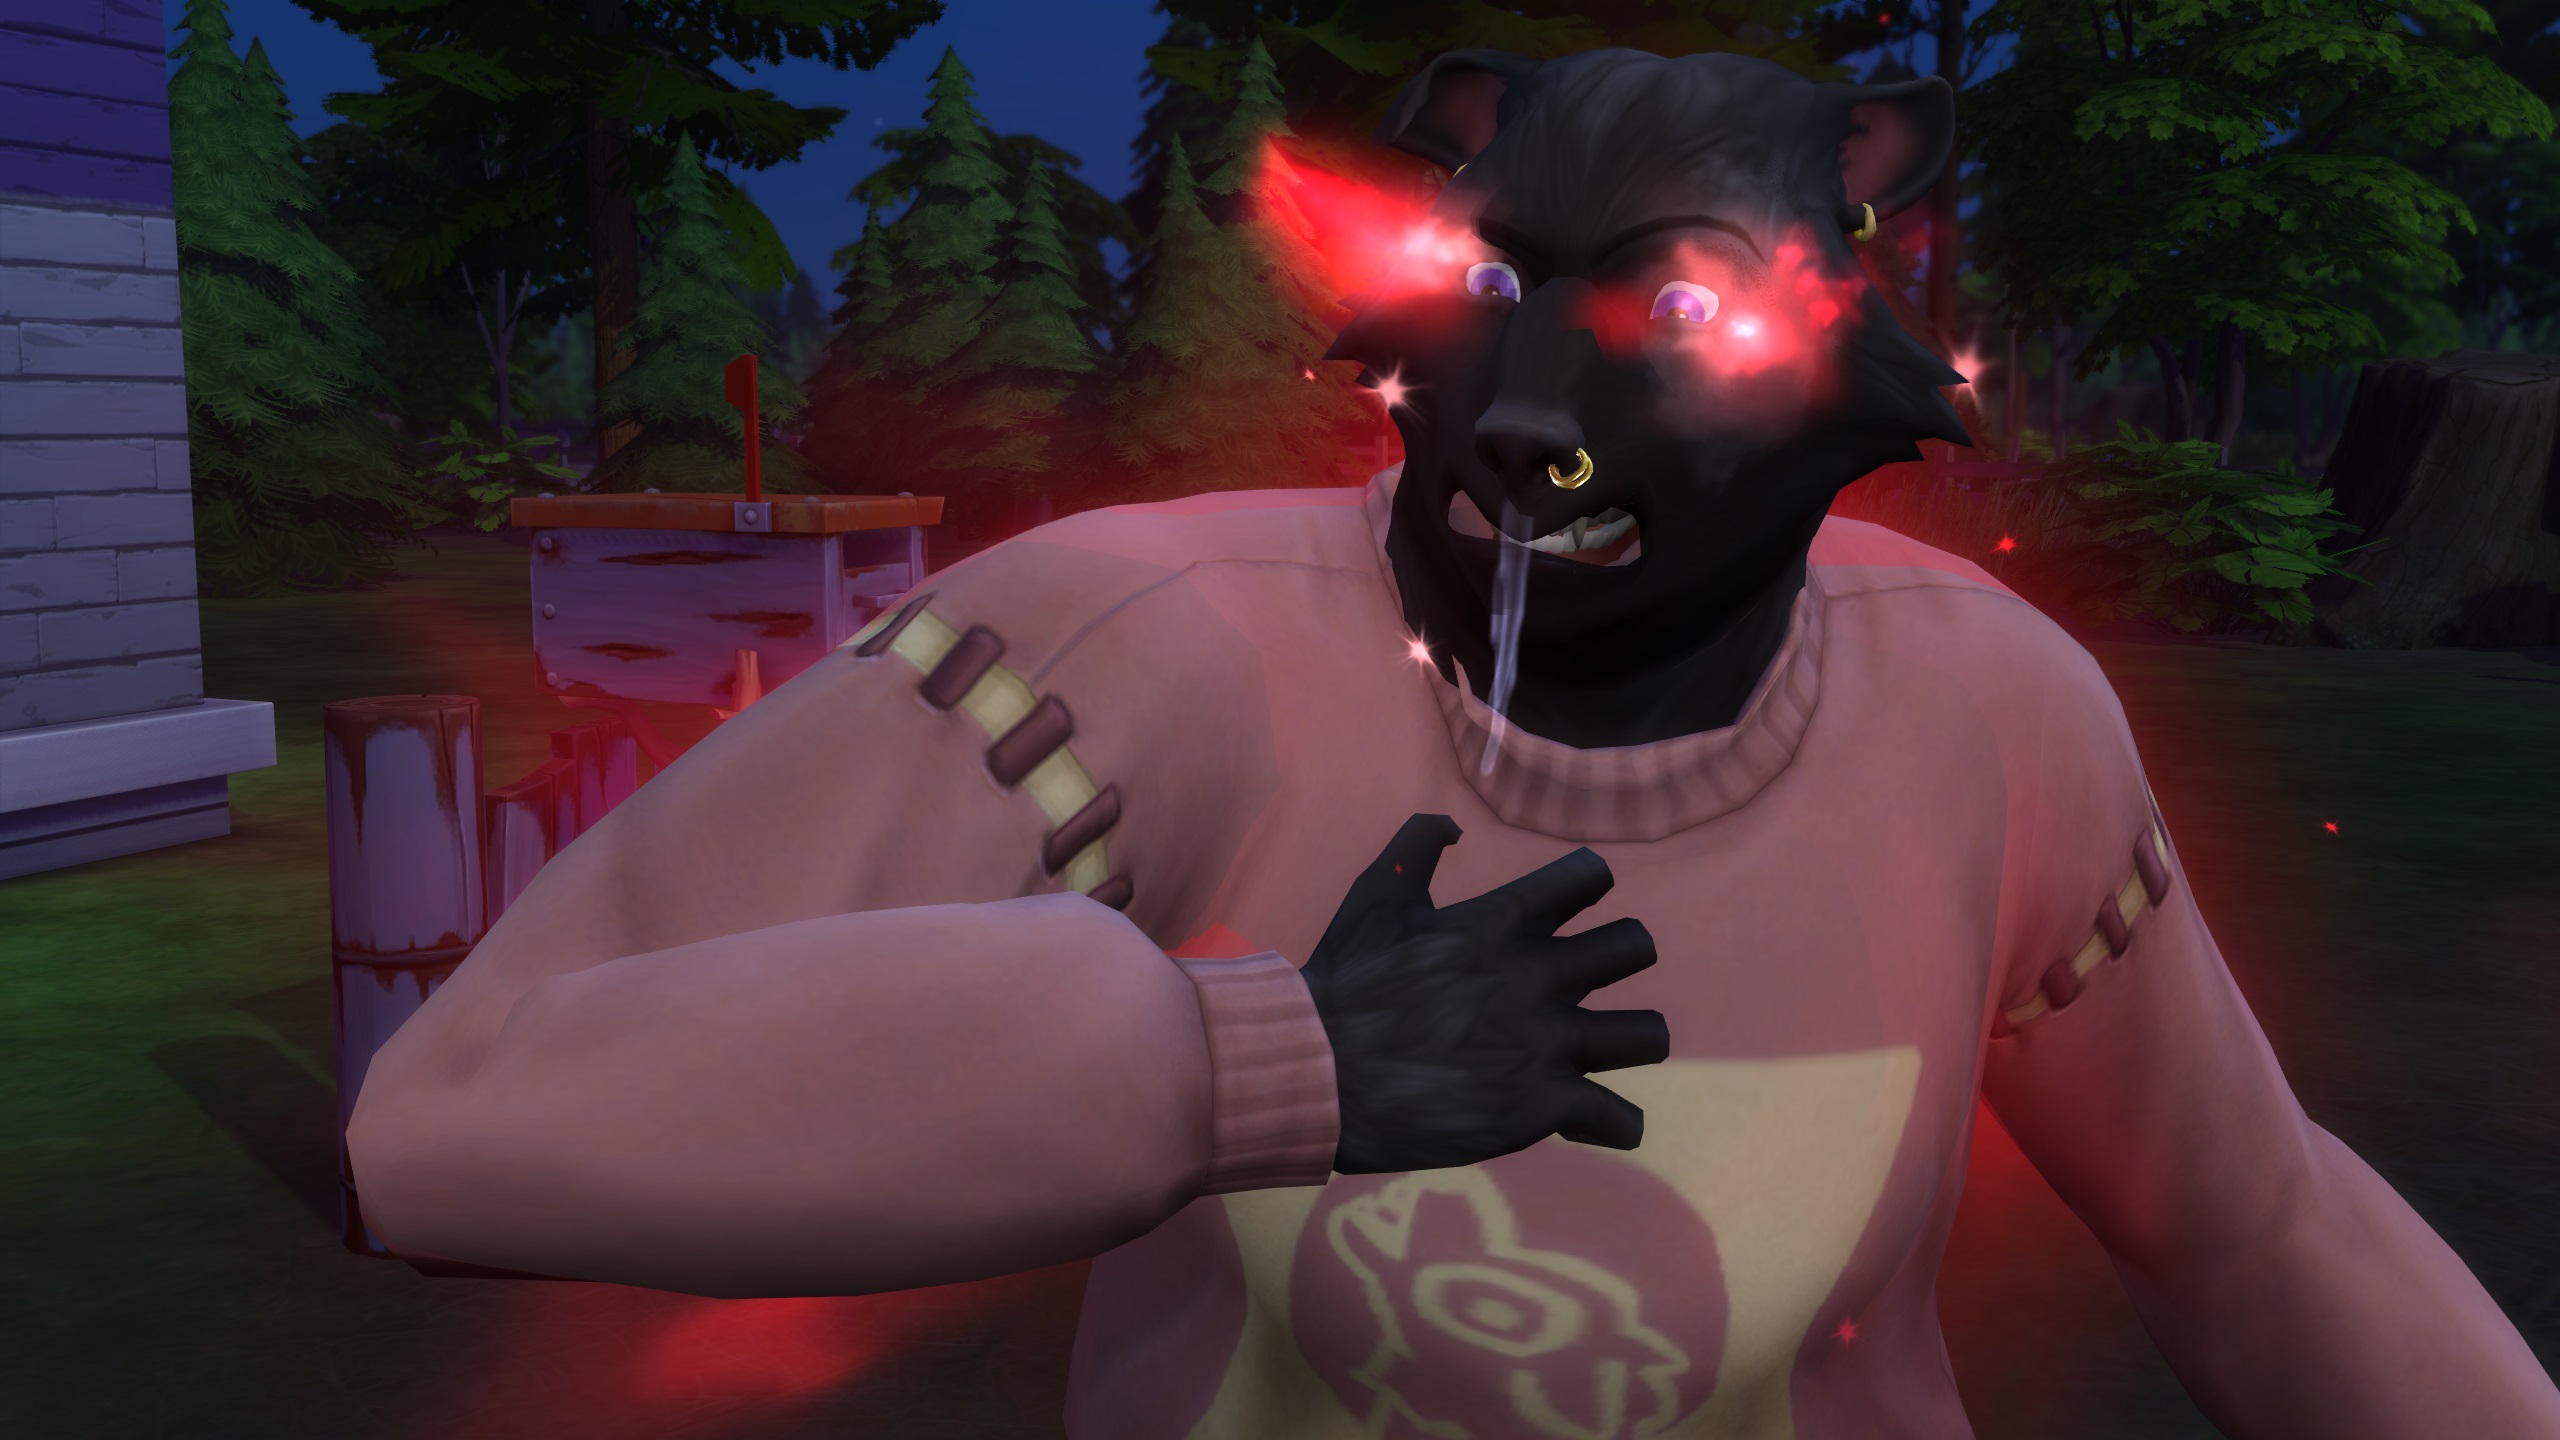 Die Sims 4 Werwölfe – Ein Werwolf-Sim mit schwarzem Fell hat wütend leuchtende rote Augen voller Wut und Sabber, während er einen rosa Pullover trägt.